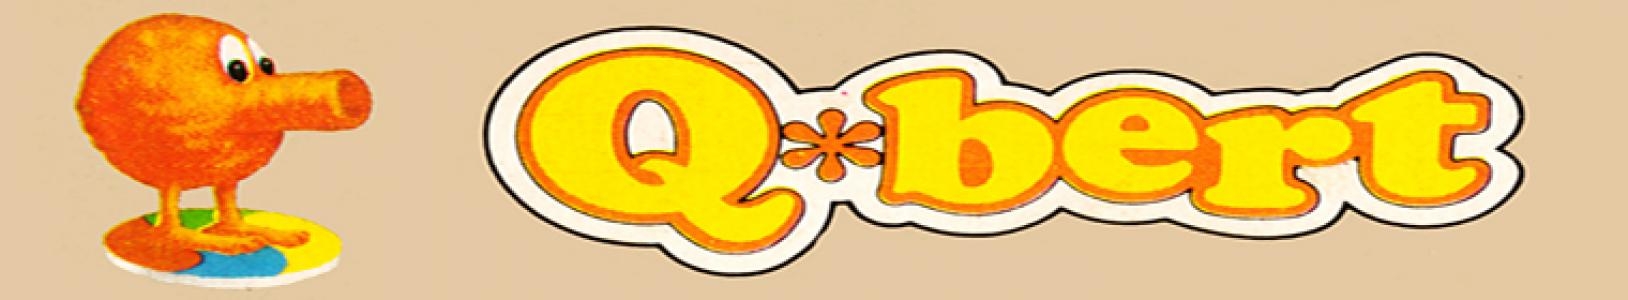 Q*bert banner